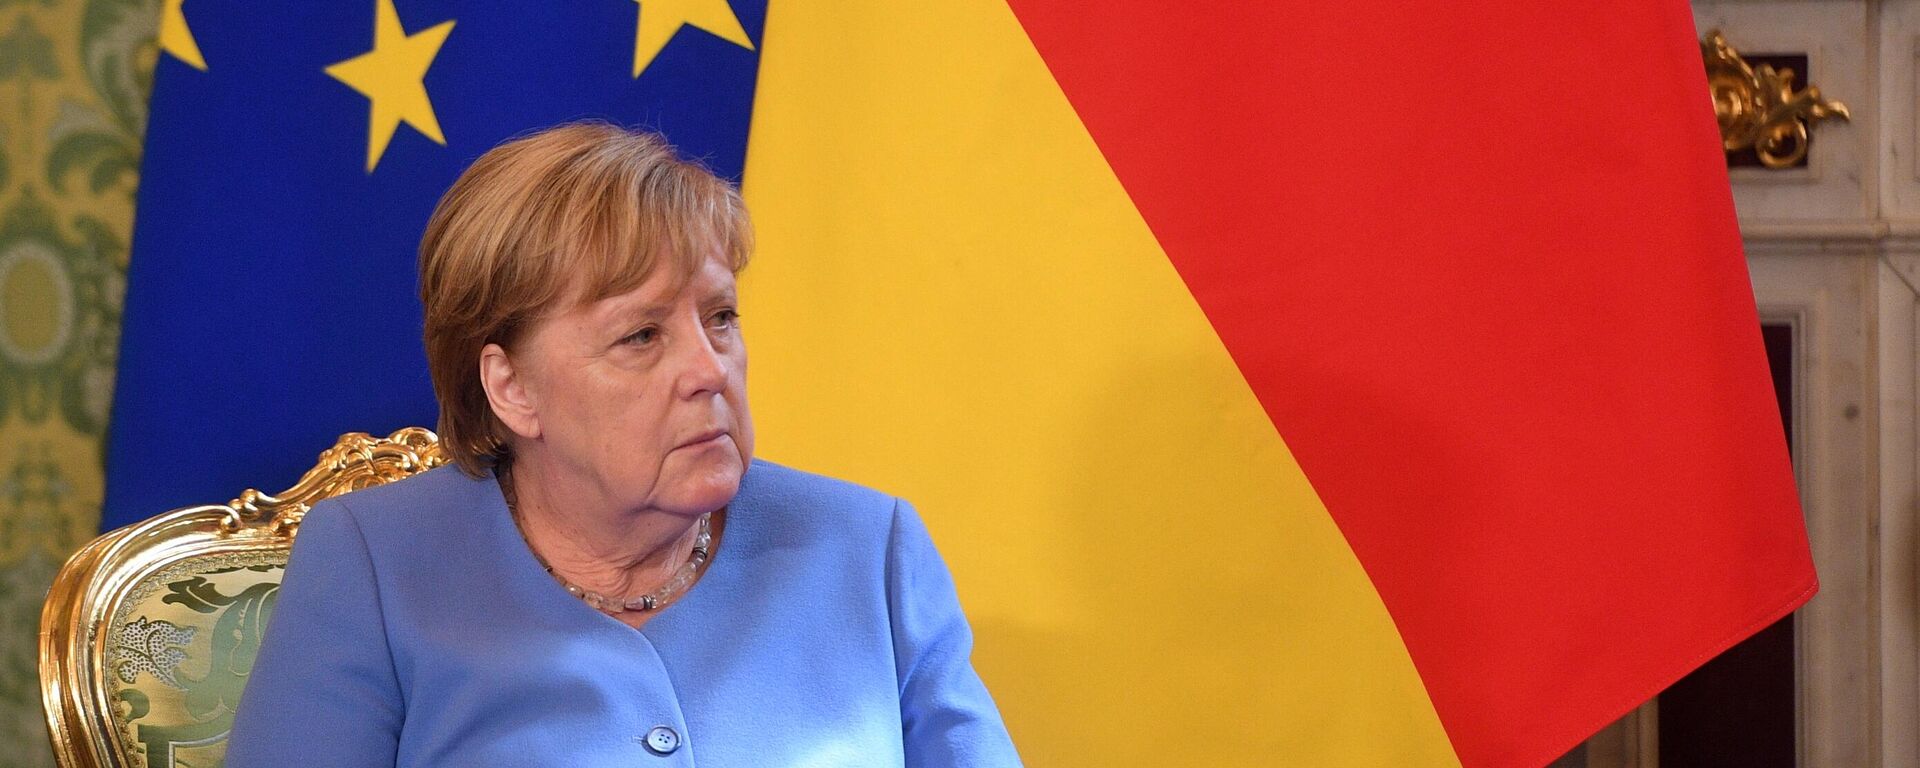 Vokietijos kanclerė Angela Merkel - Sputnik Lietuva, 1920, 12.09.2021